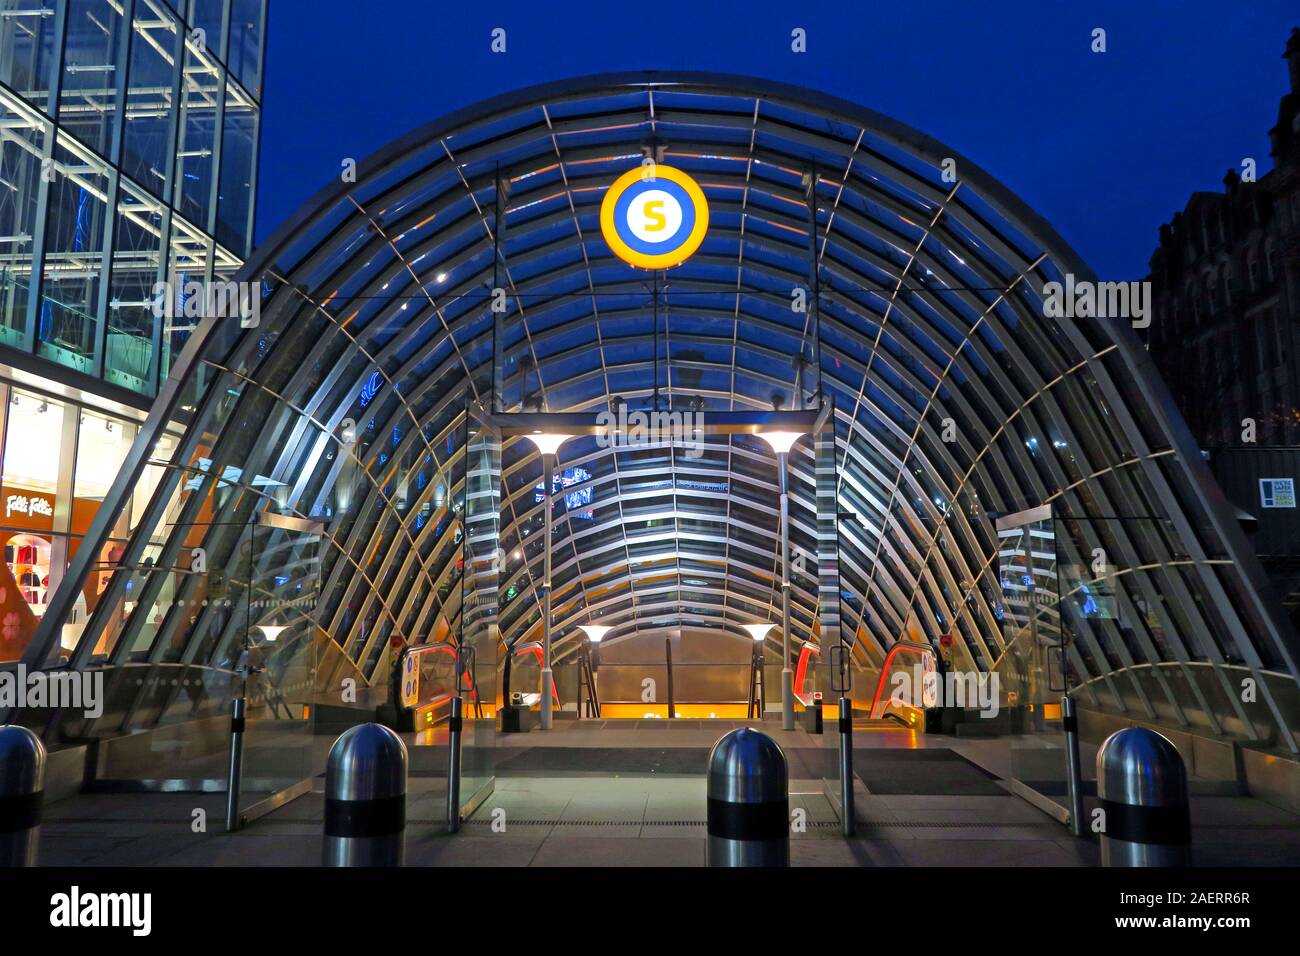 St Enoch, Subway, SPT, canopías de vidrio, Glasgow, Escocia, Reino Unido Foto de stock